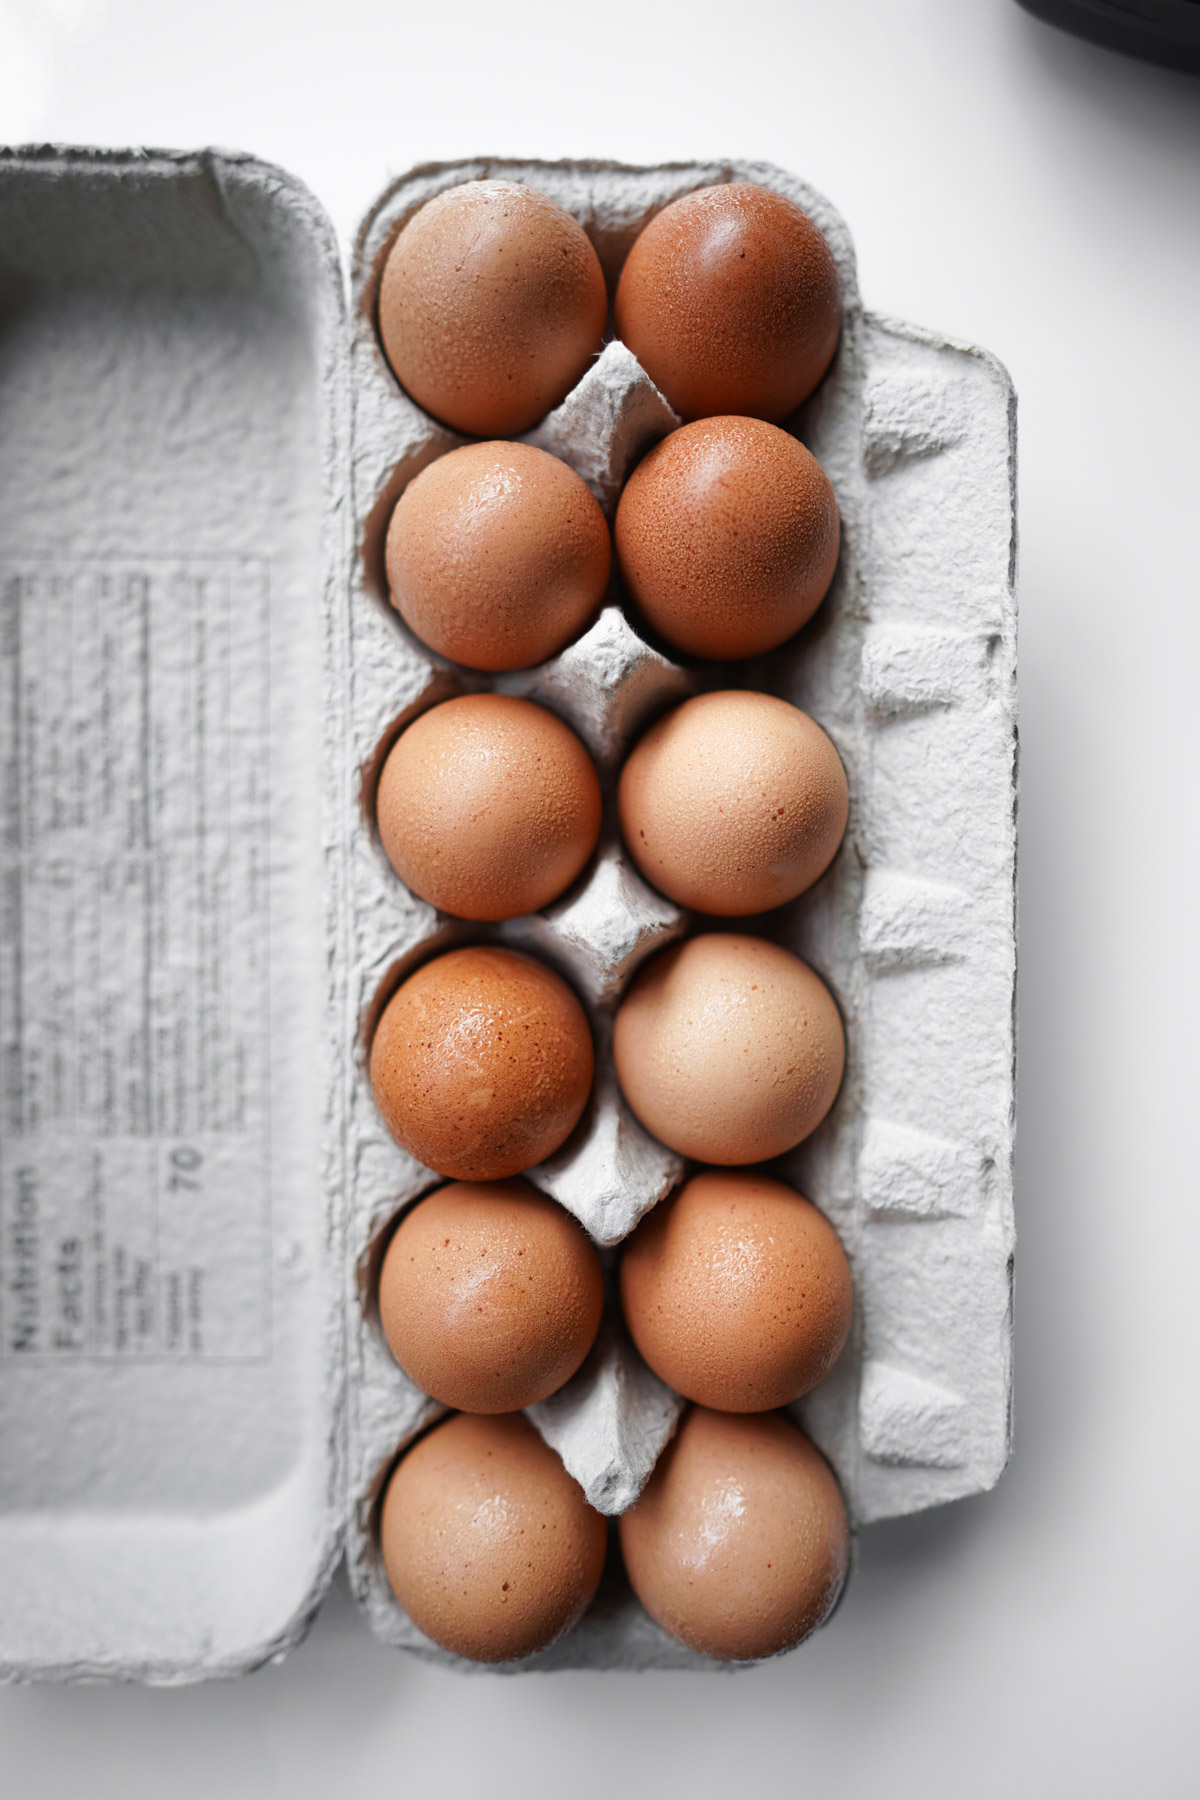 dozen eggs in a carton, with condensation